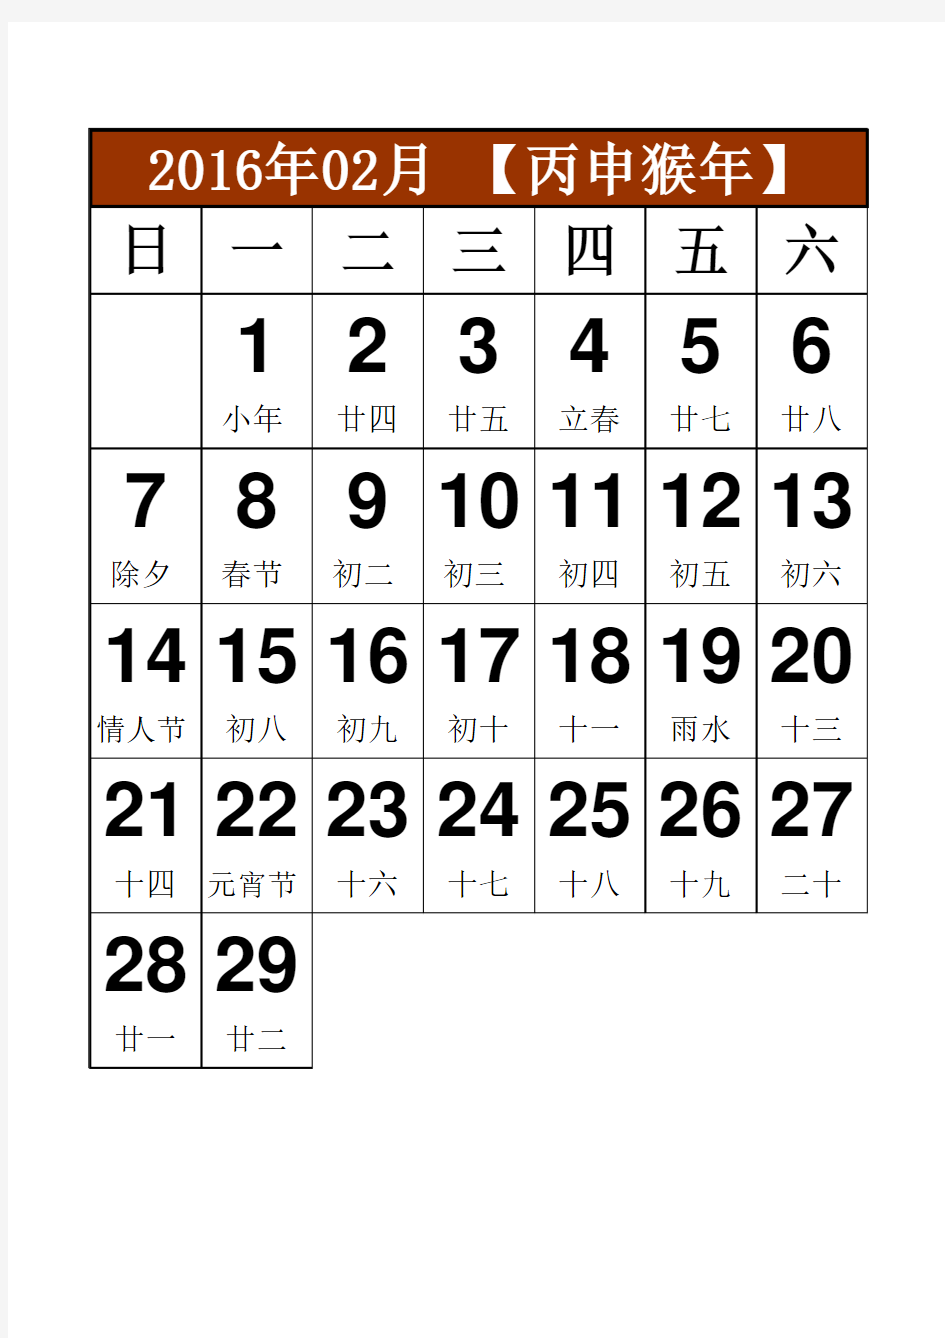 【亲自排版一键打印12页】自用多年2016年日历月历A4竖打每月一张大号字体方便做备忘录